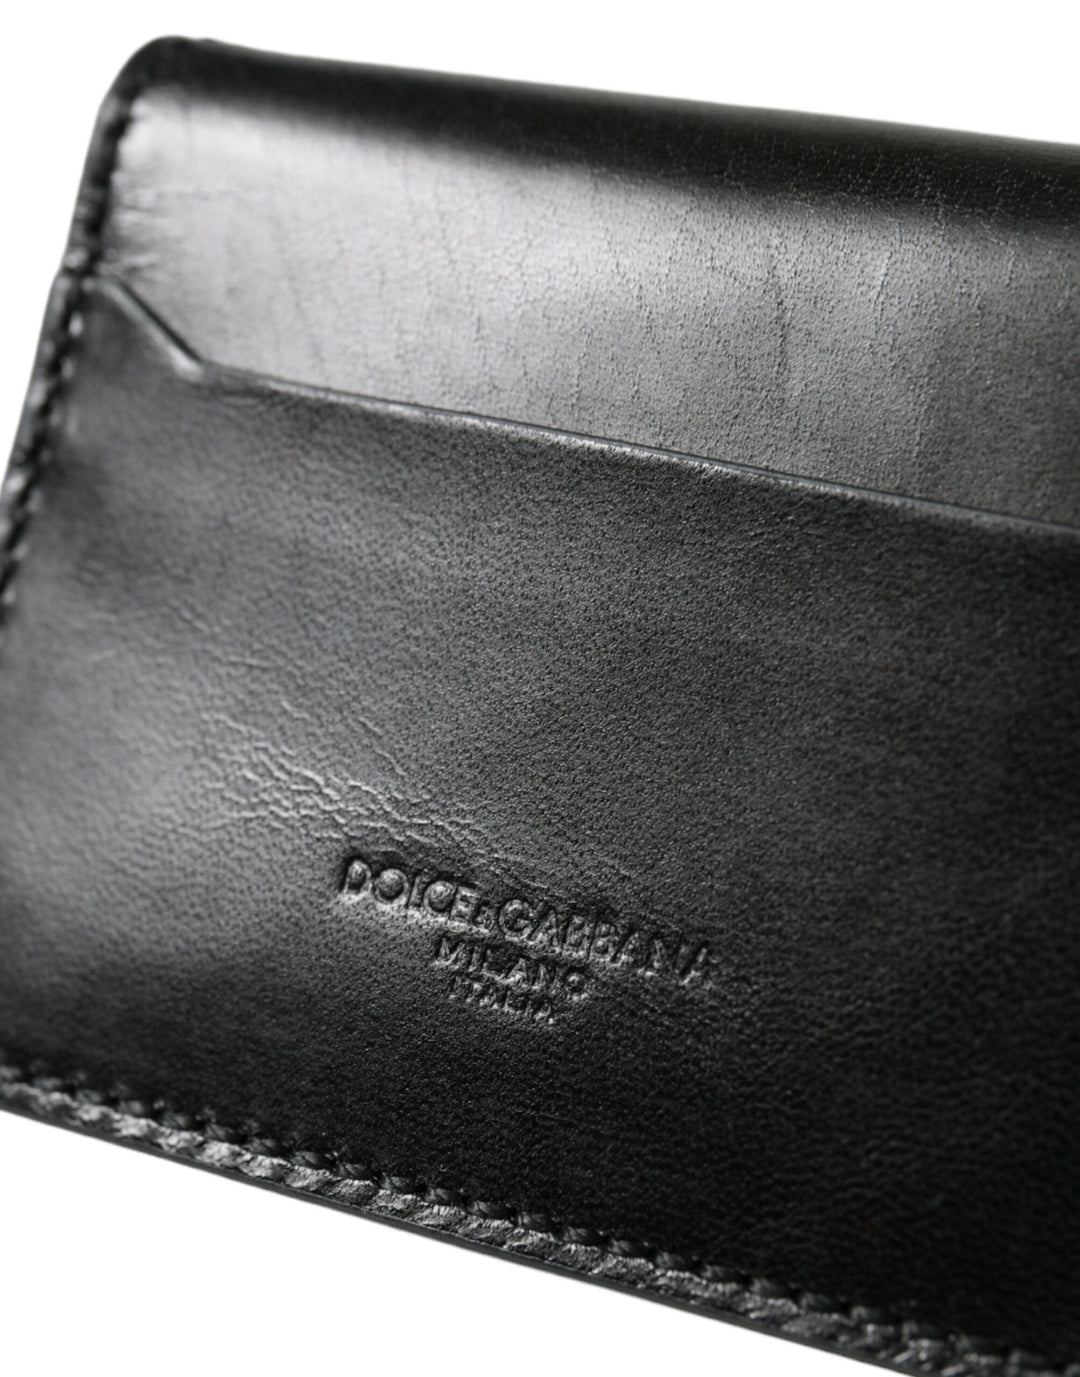 Dolce & Gabbana Black Leather Bifold Logo Card Holder Keyring Wallet